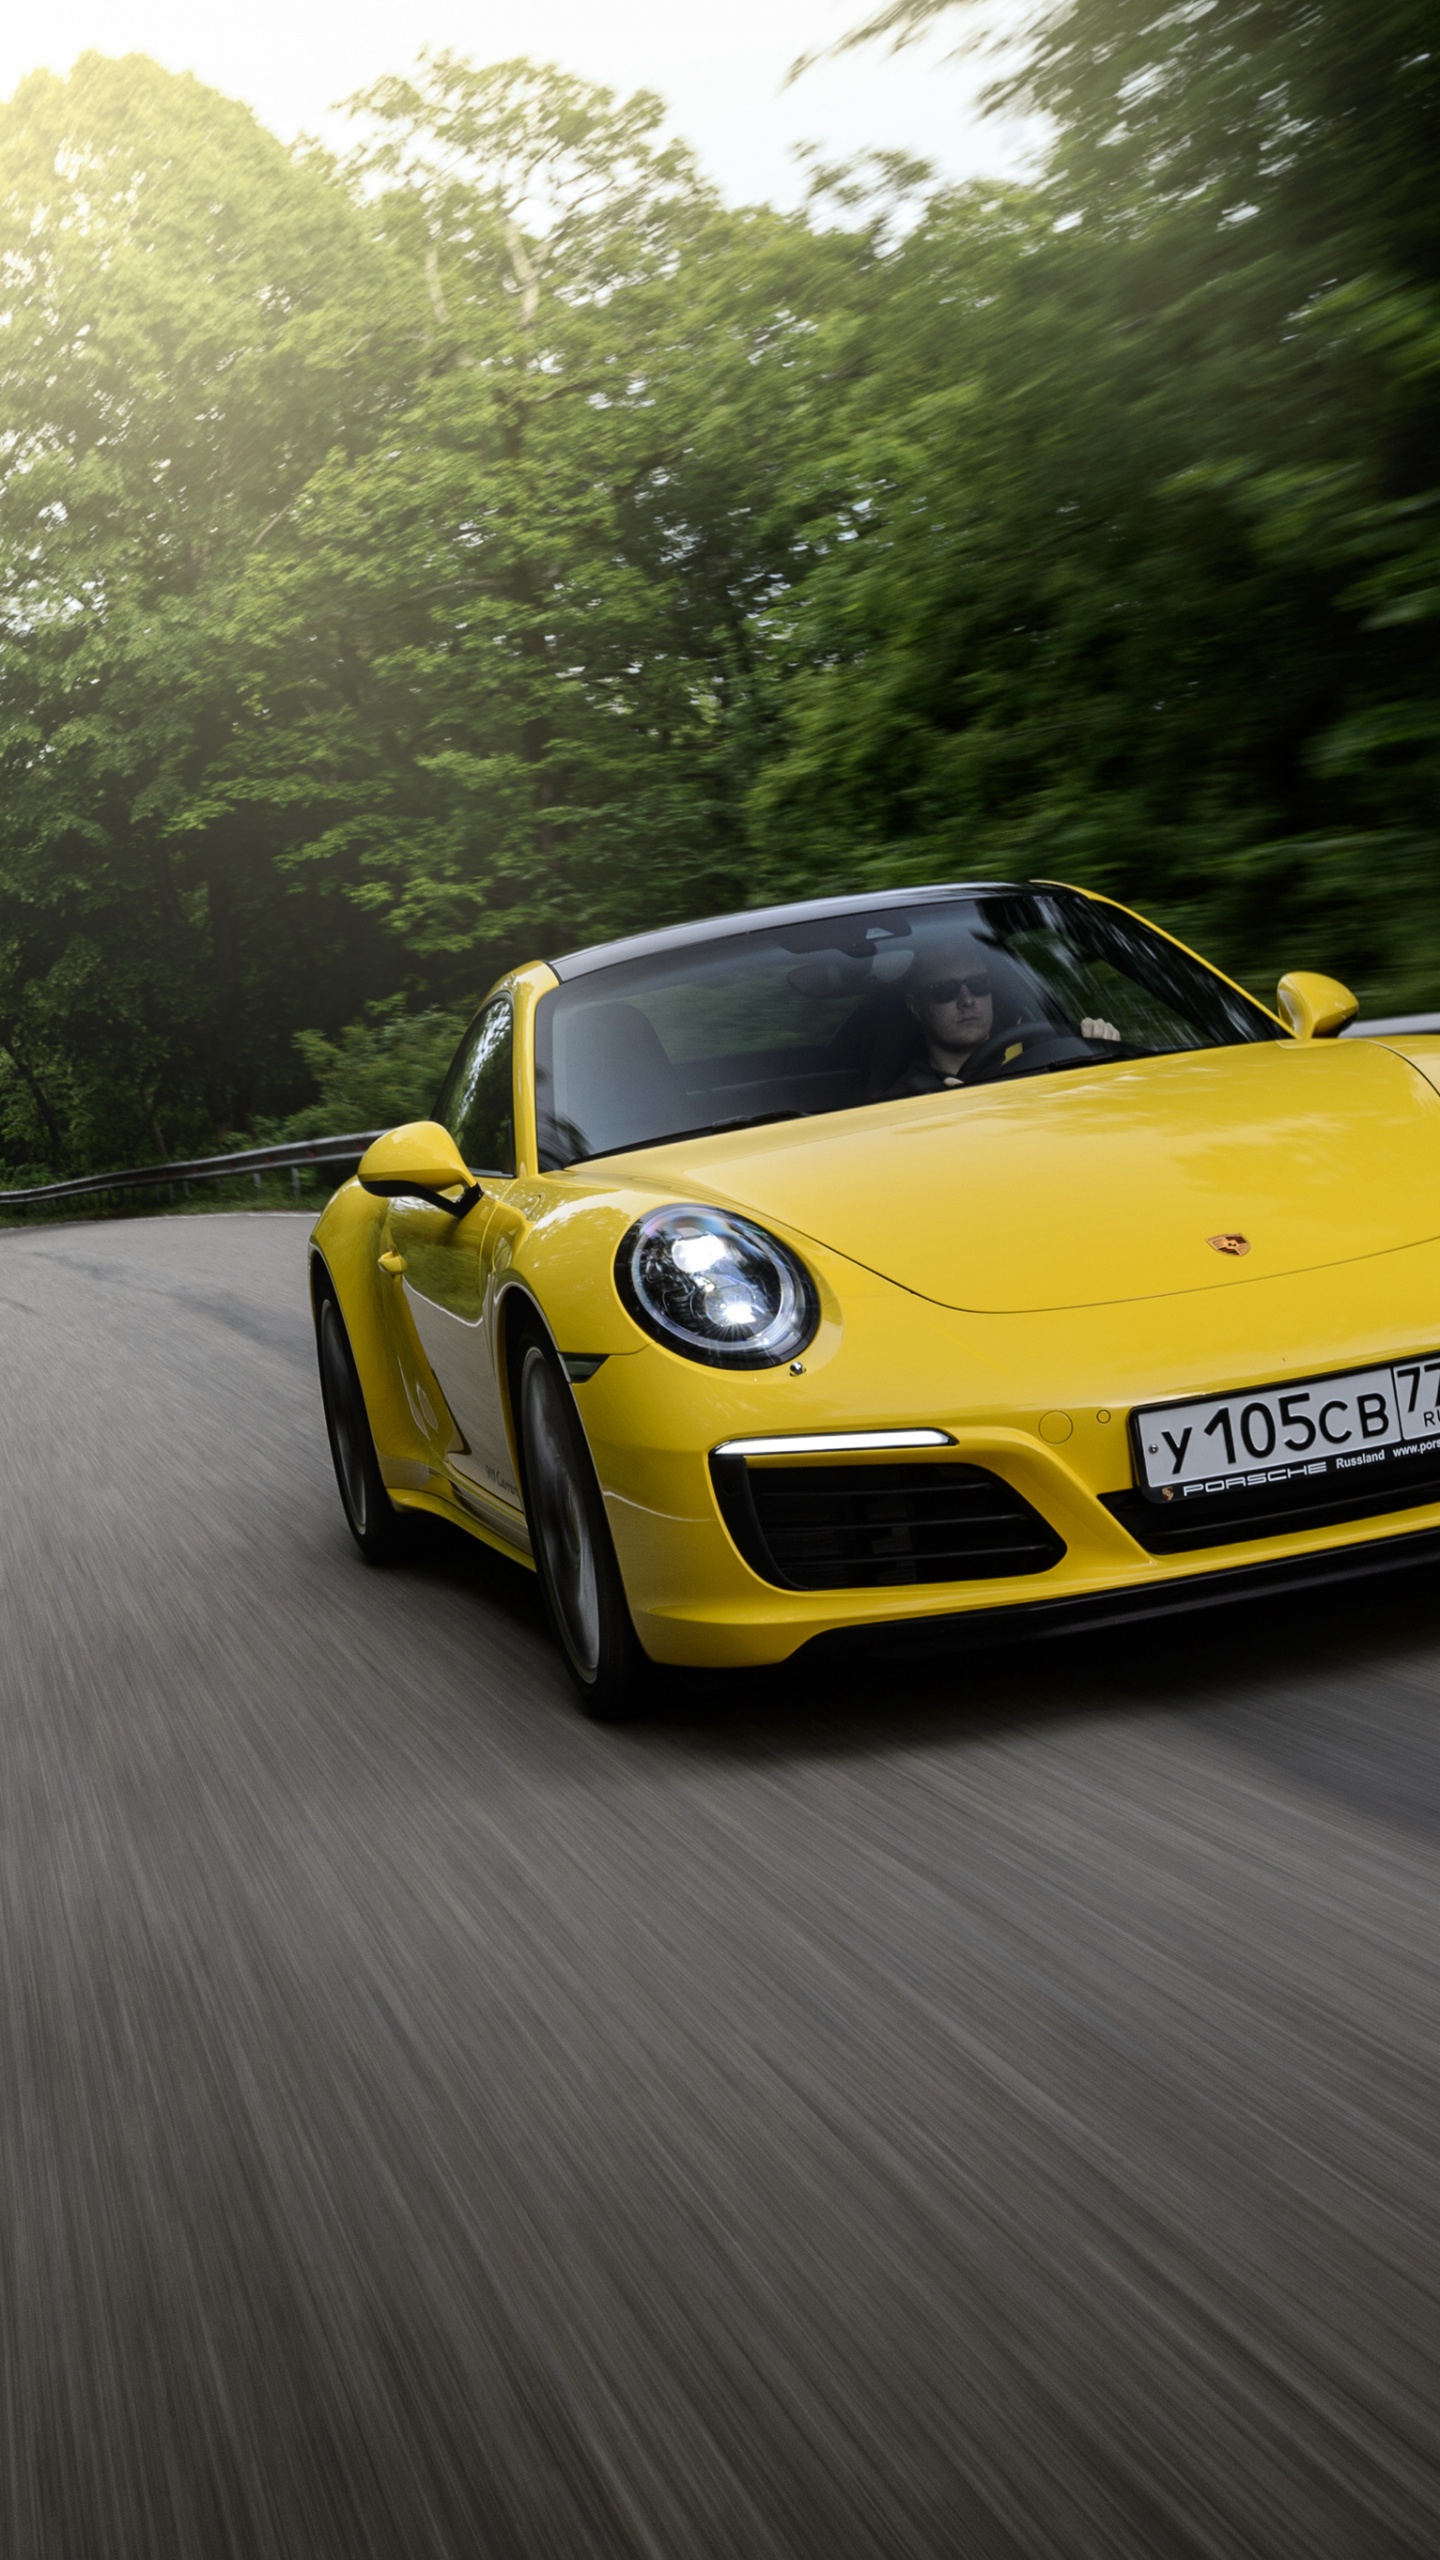 Porsche 911 Jaune Sur Route Pendant la Journée. Wallpaper in 1440x2560 Resolution